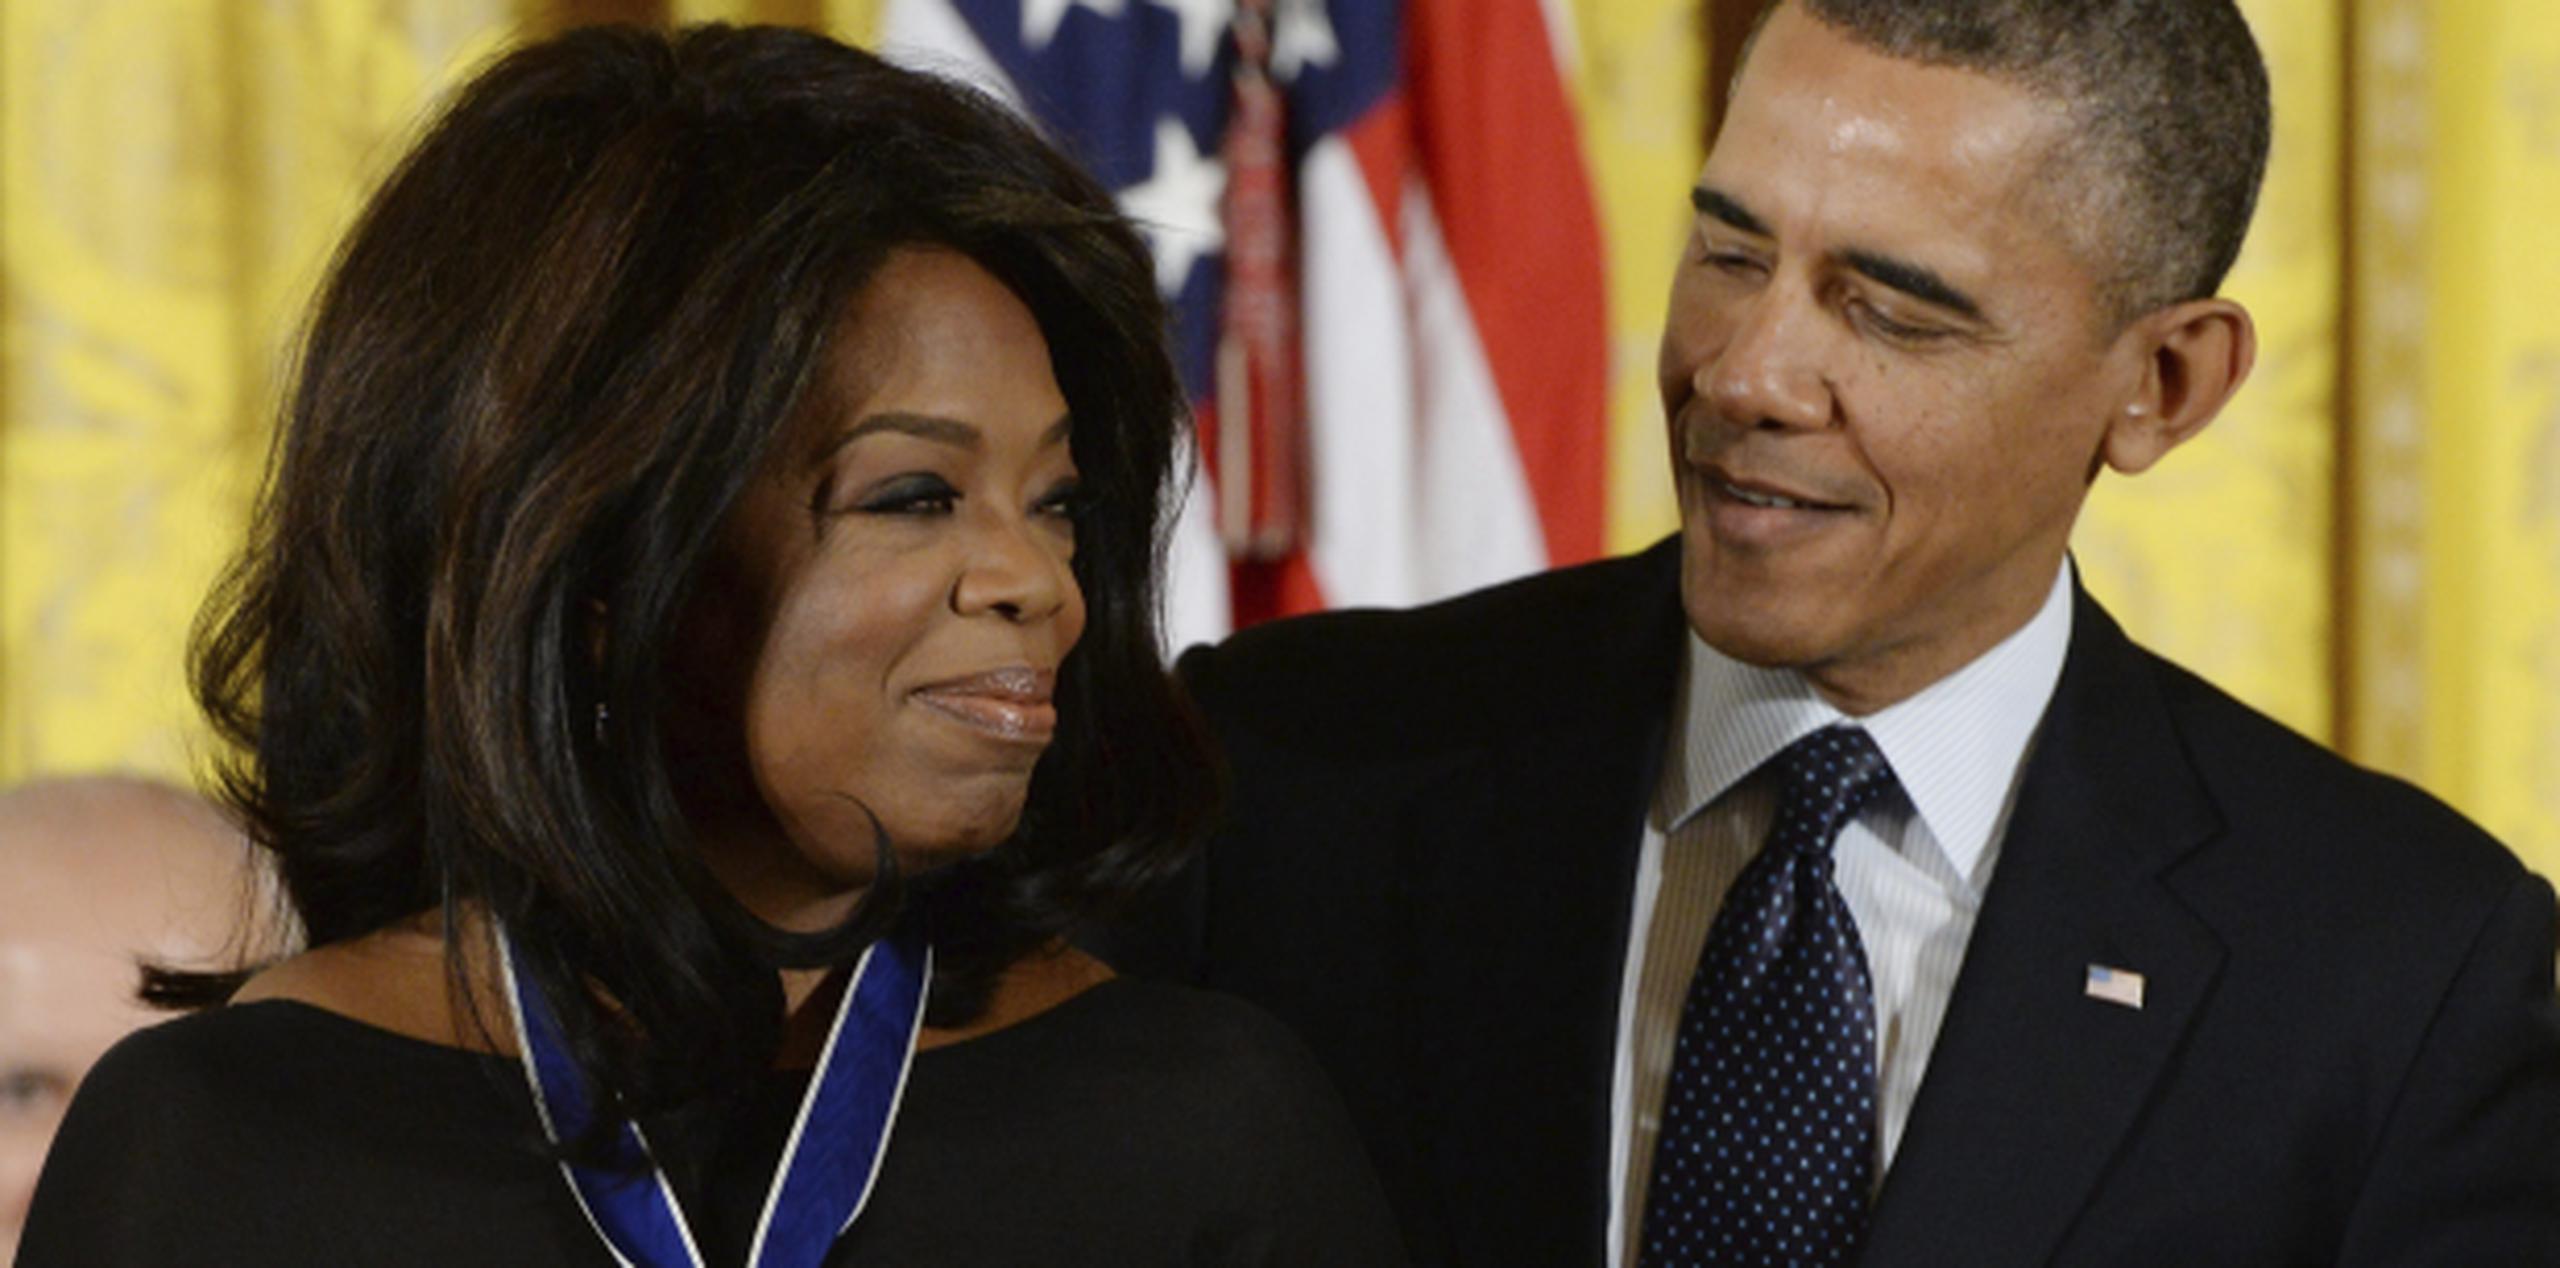 Obama dio la condecoración más alta que otorga la nación a un civil a la presentadora de televisión Oprah Winfrey, y a otros que se han destacado en la política, la ciencia, el espectáculo, el deporte y otras áreas. (EFE/Michael Reynolds)